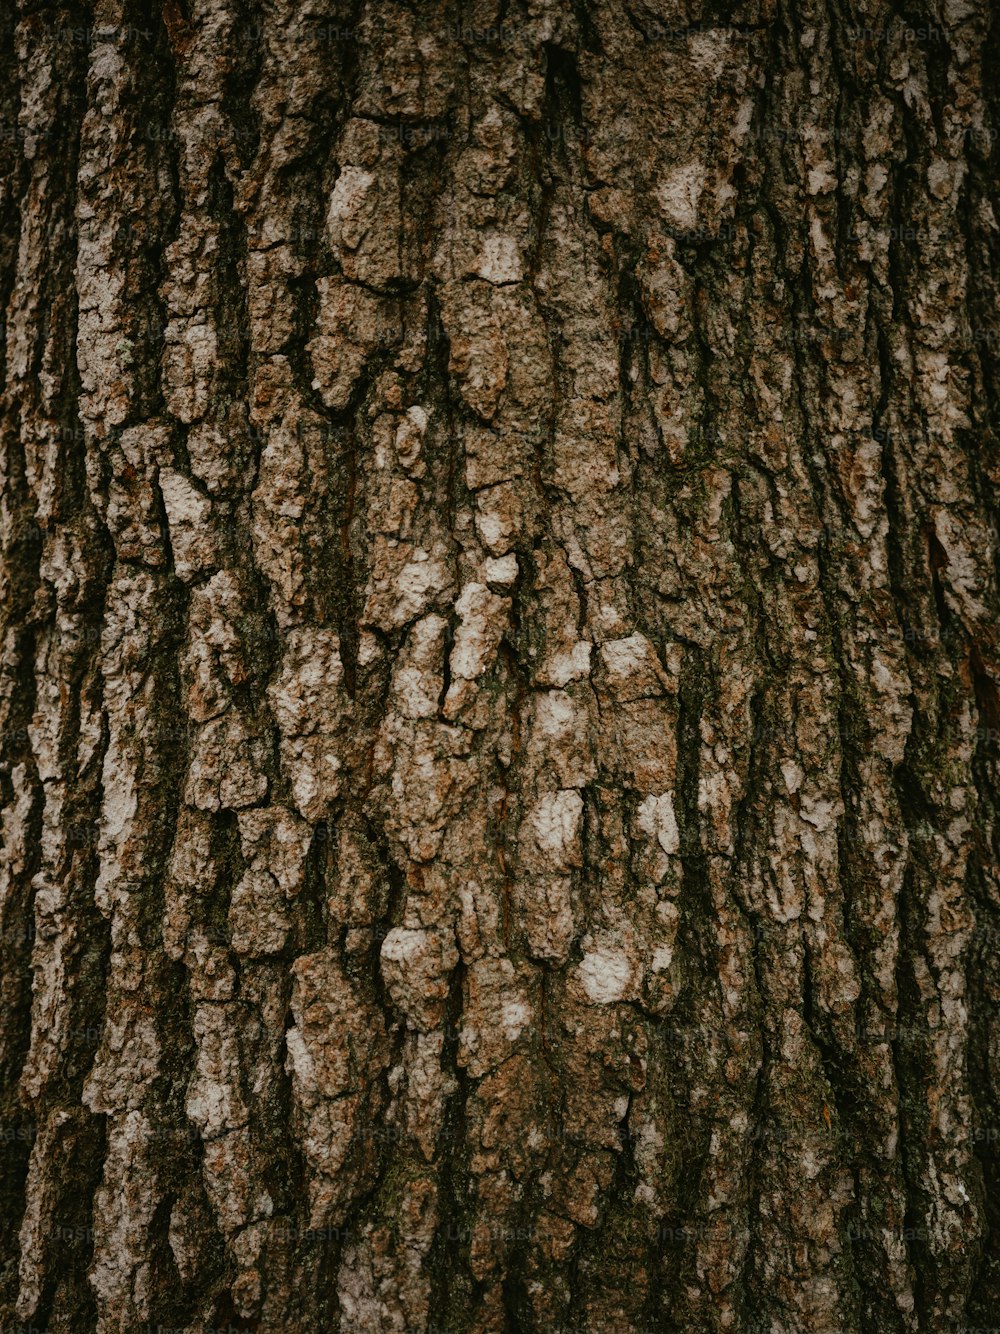 Un primer plano de la corteza de un árbol